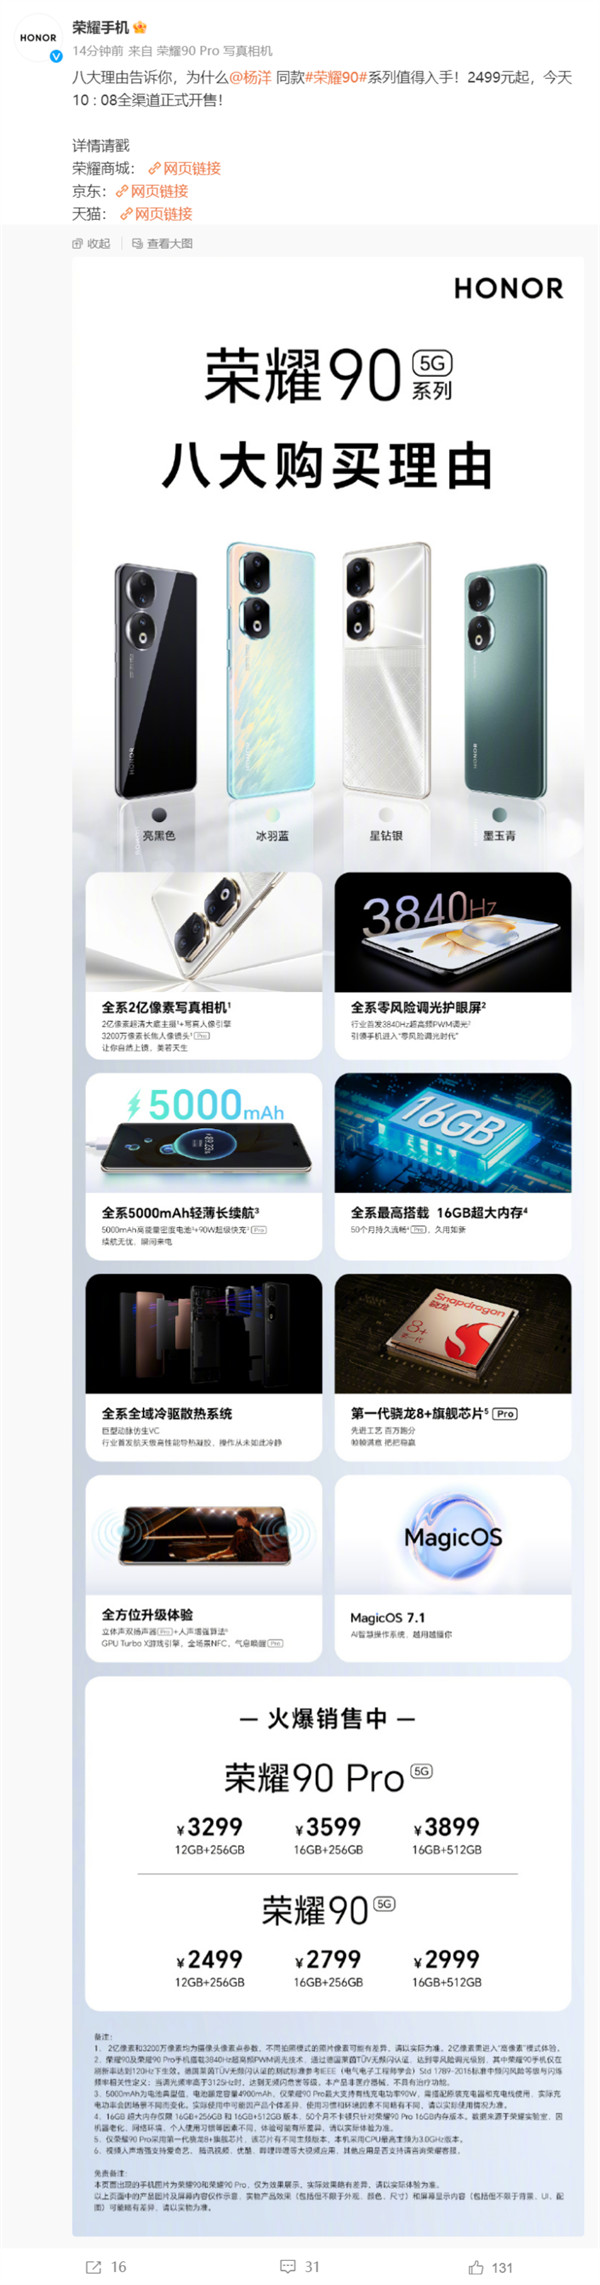 荣耀 90/Pro 系列国行手机开售，售价2499 元起